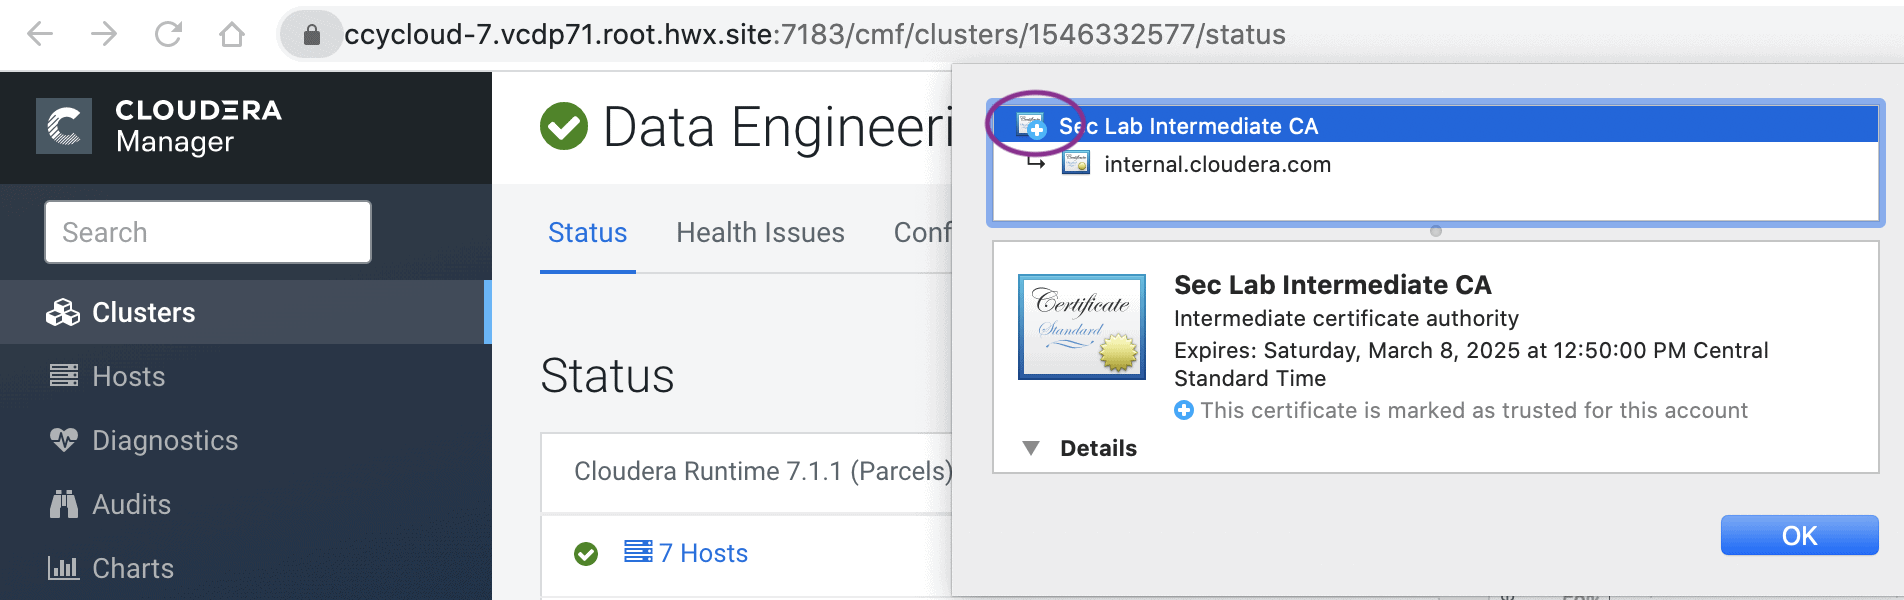 Cloudera Manager UI